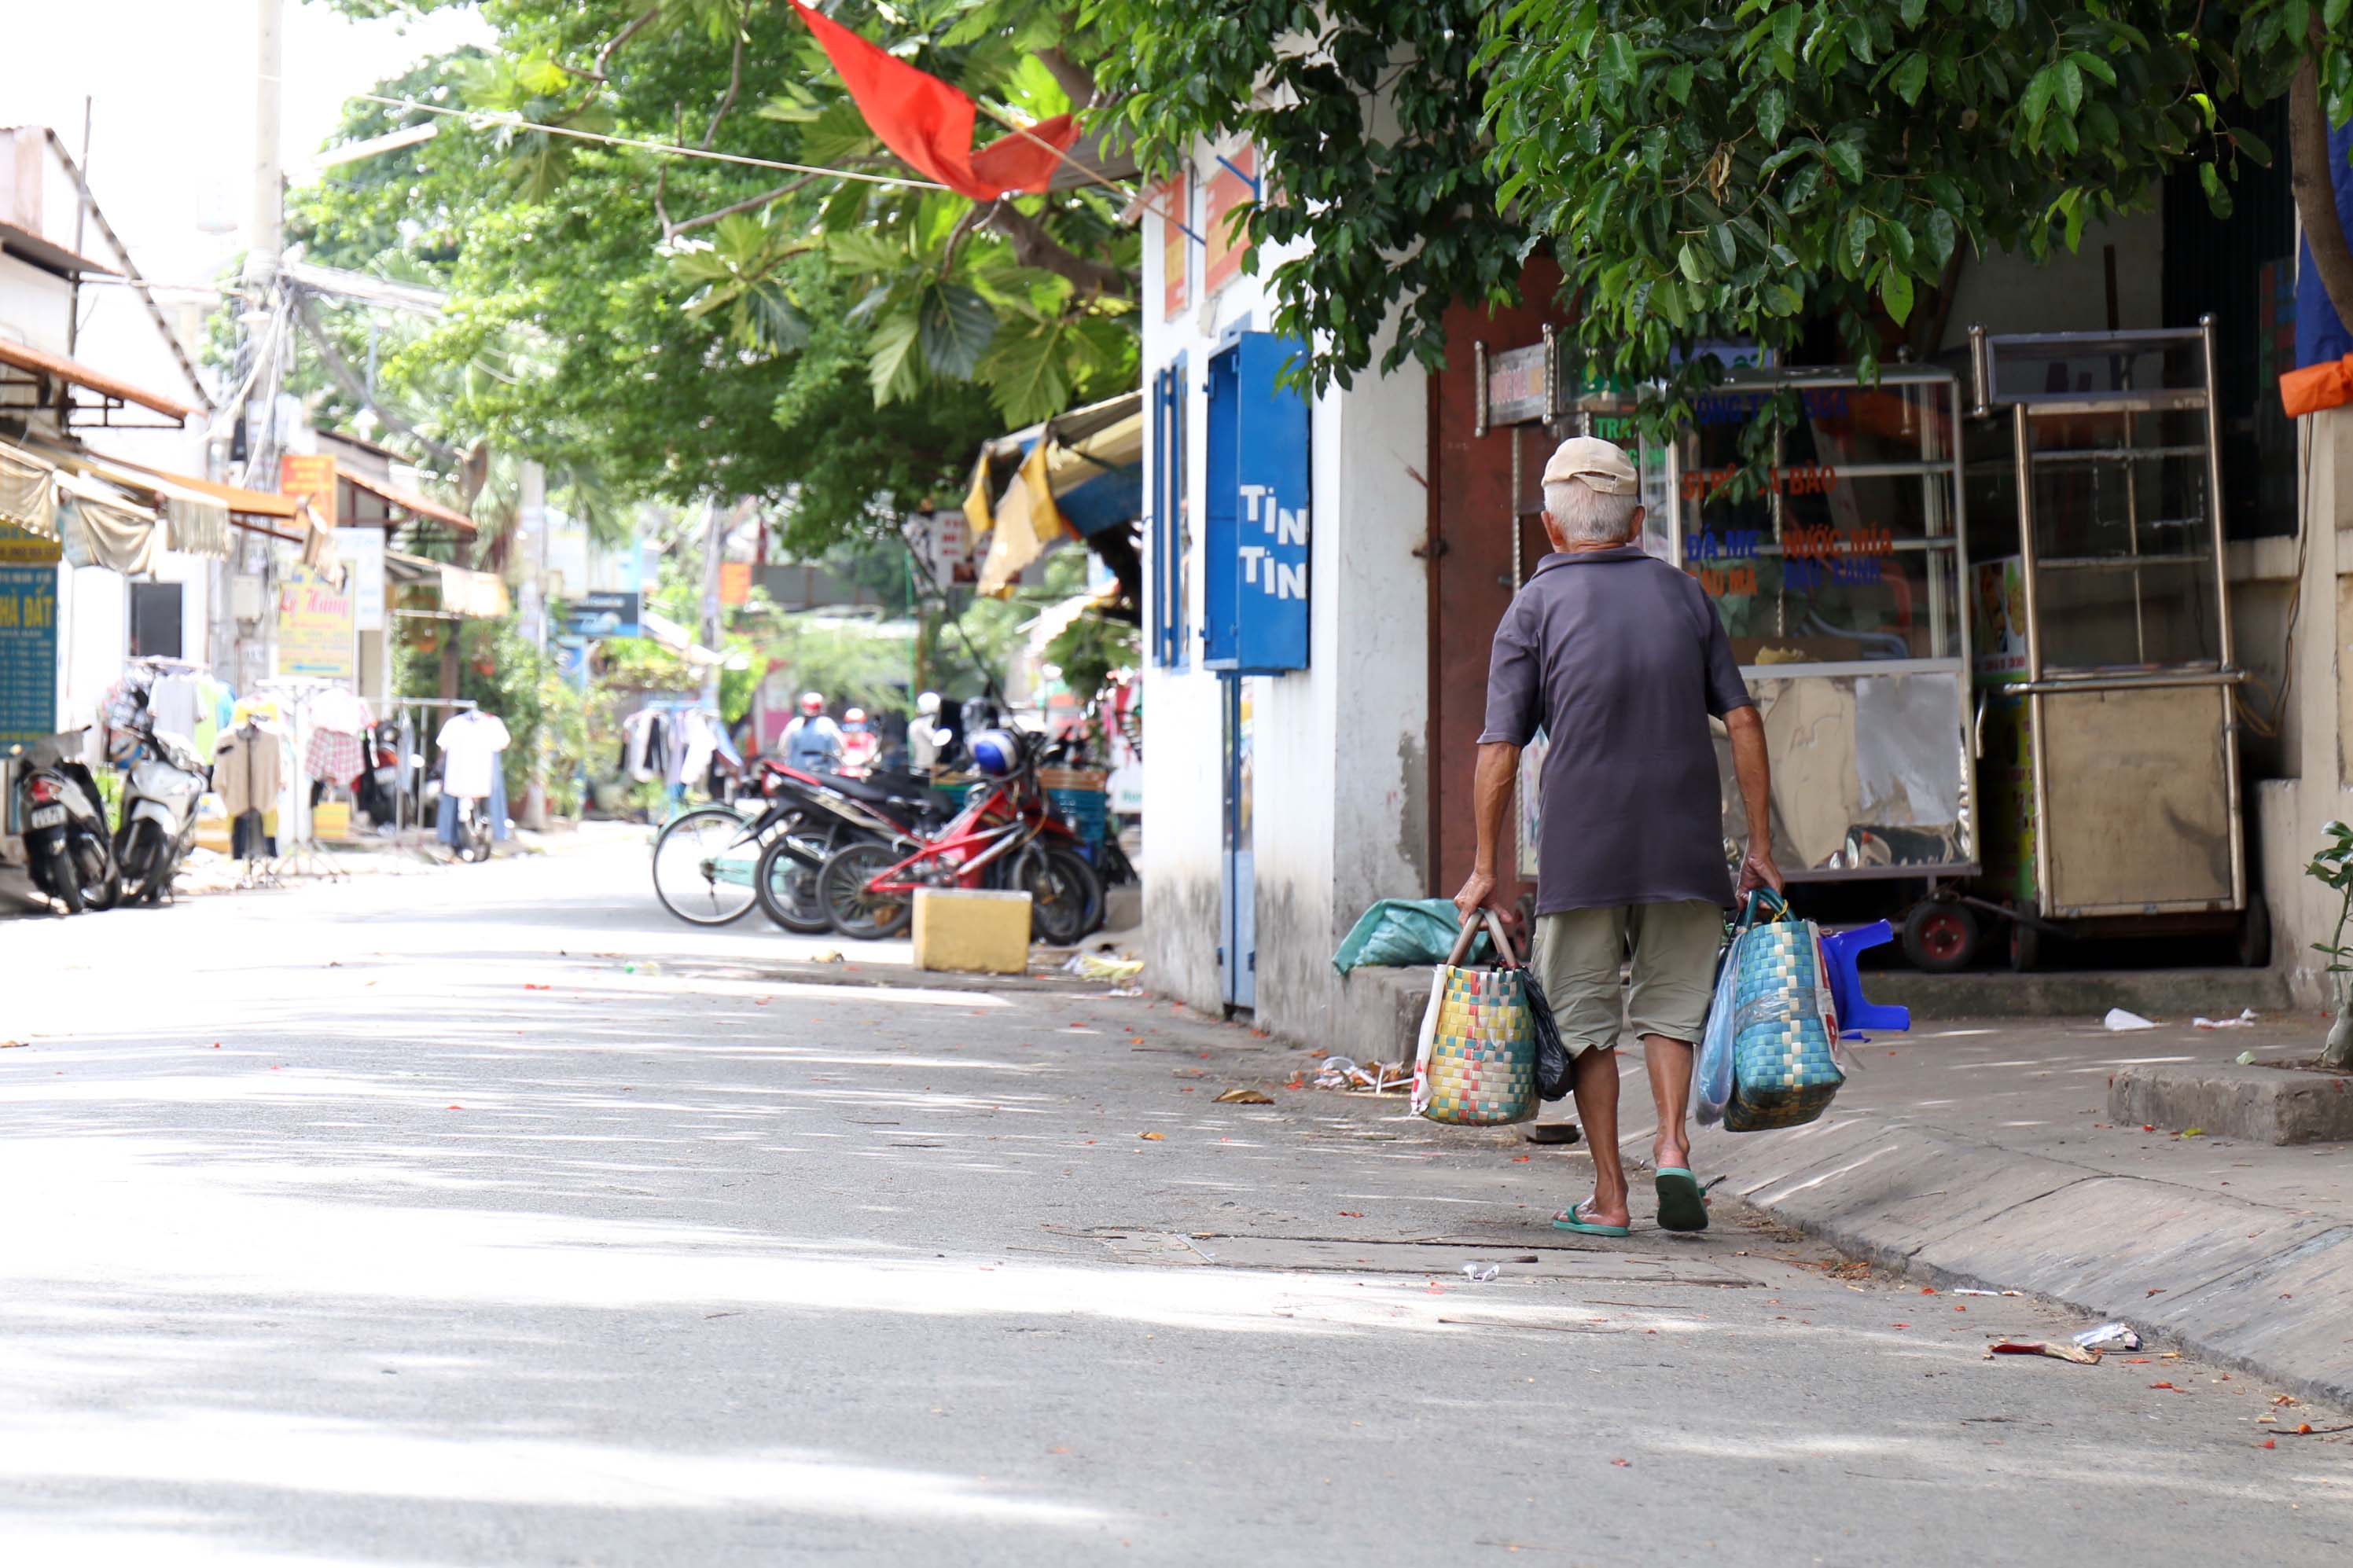 Dáng lưng còng cùng tiếng rao khàn đặc của cụ quen thuộc với nhiều người Sài Gòn